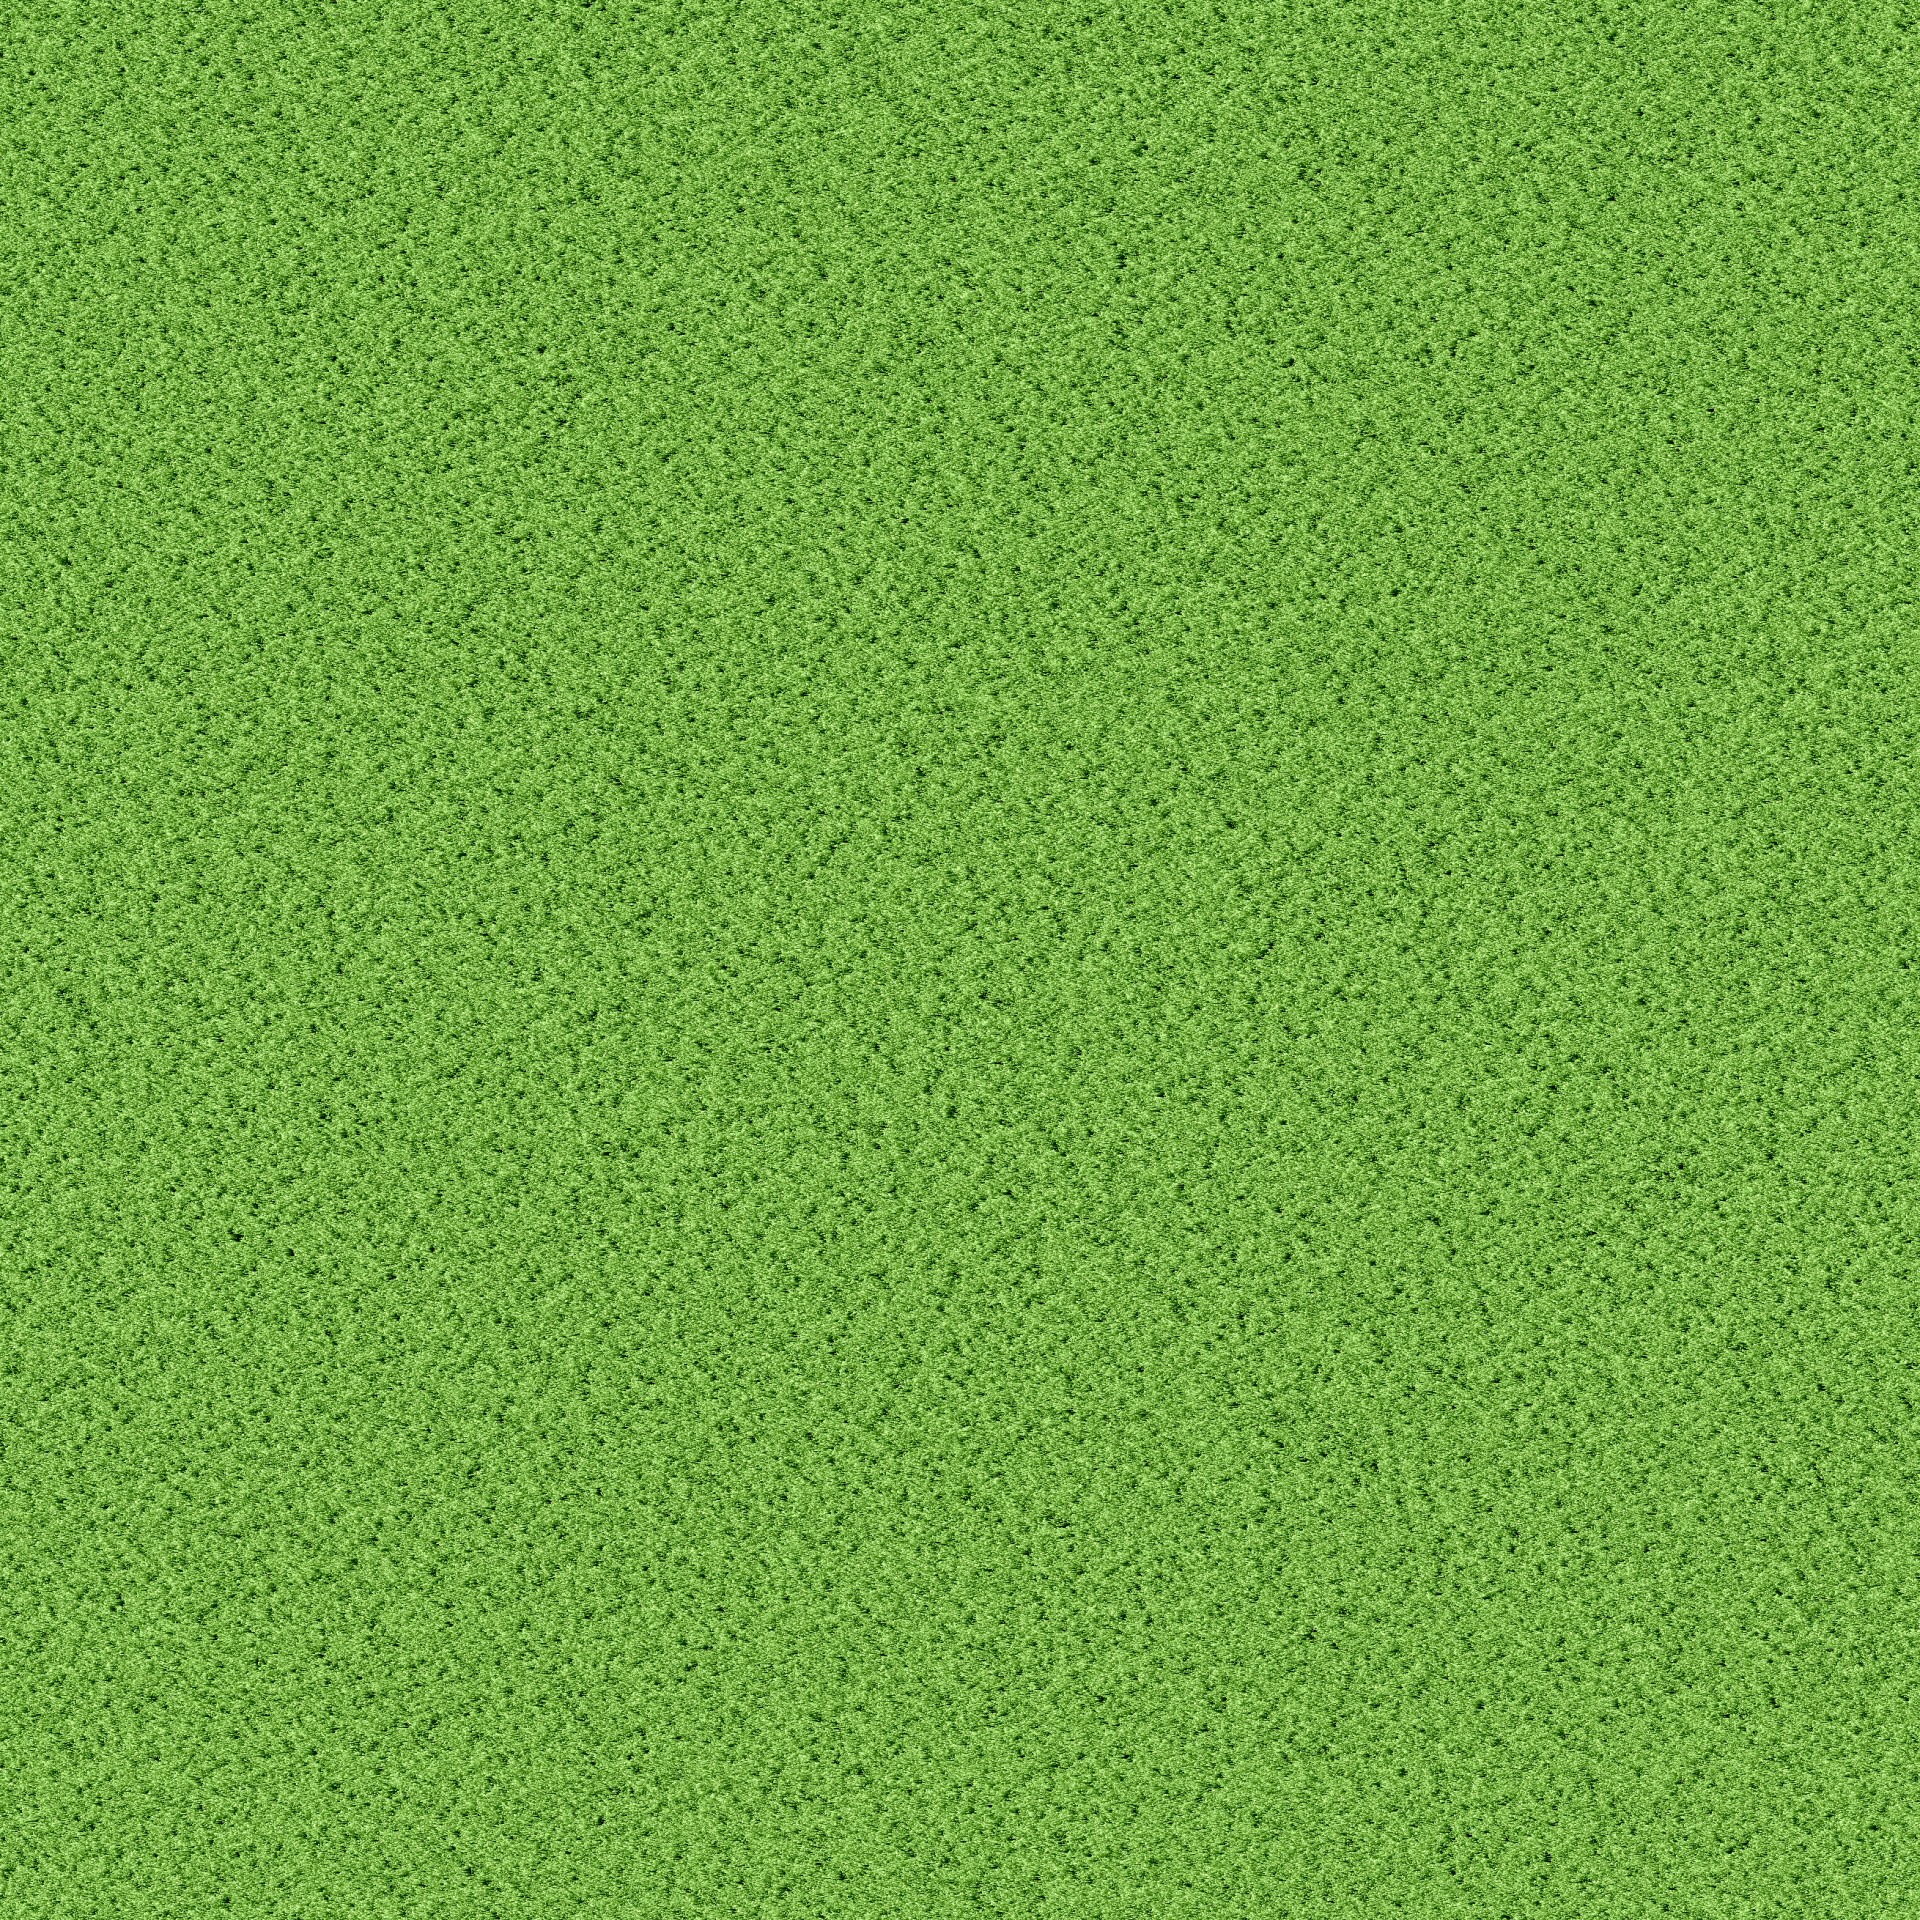 grass texture background green